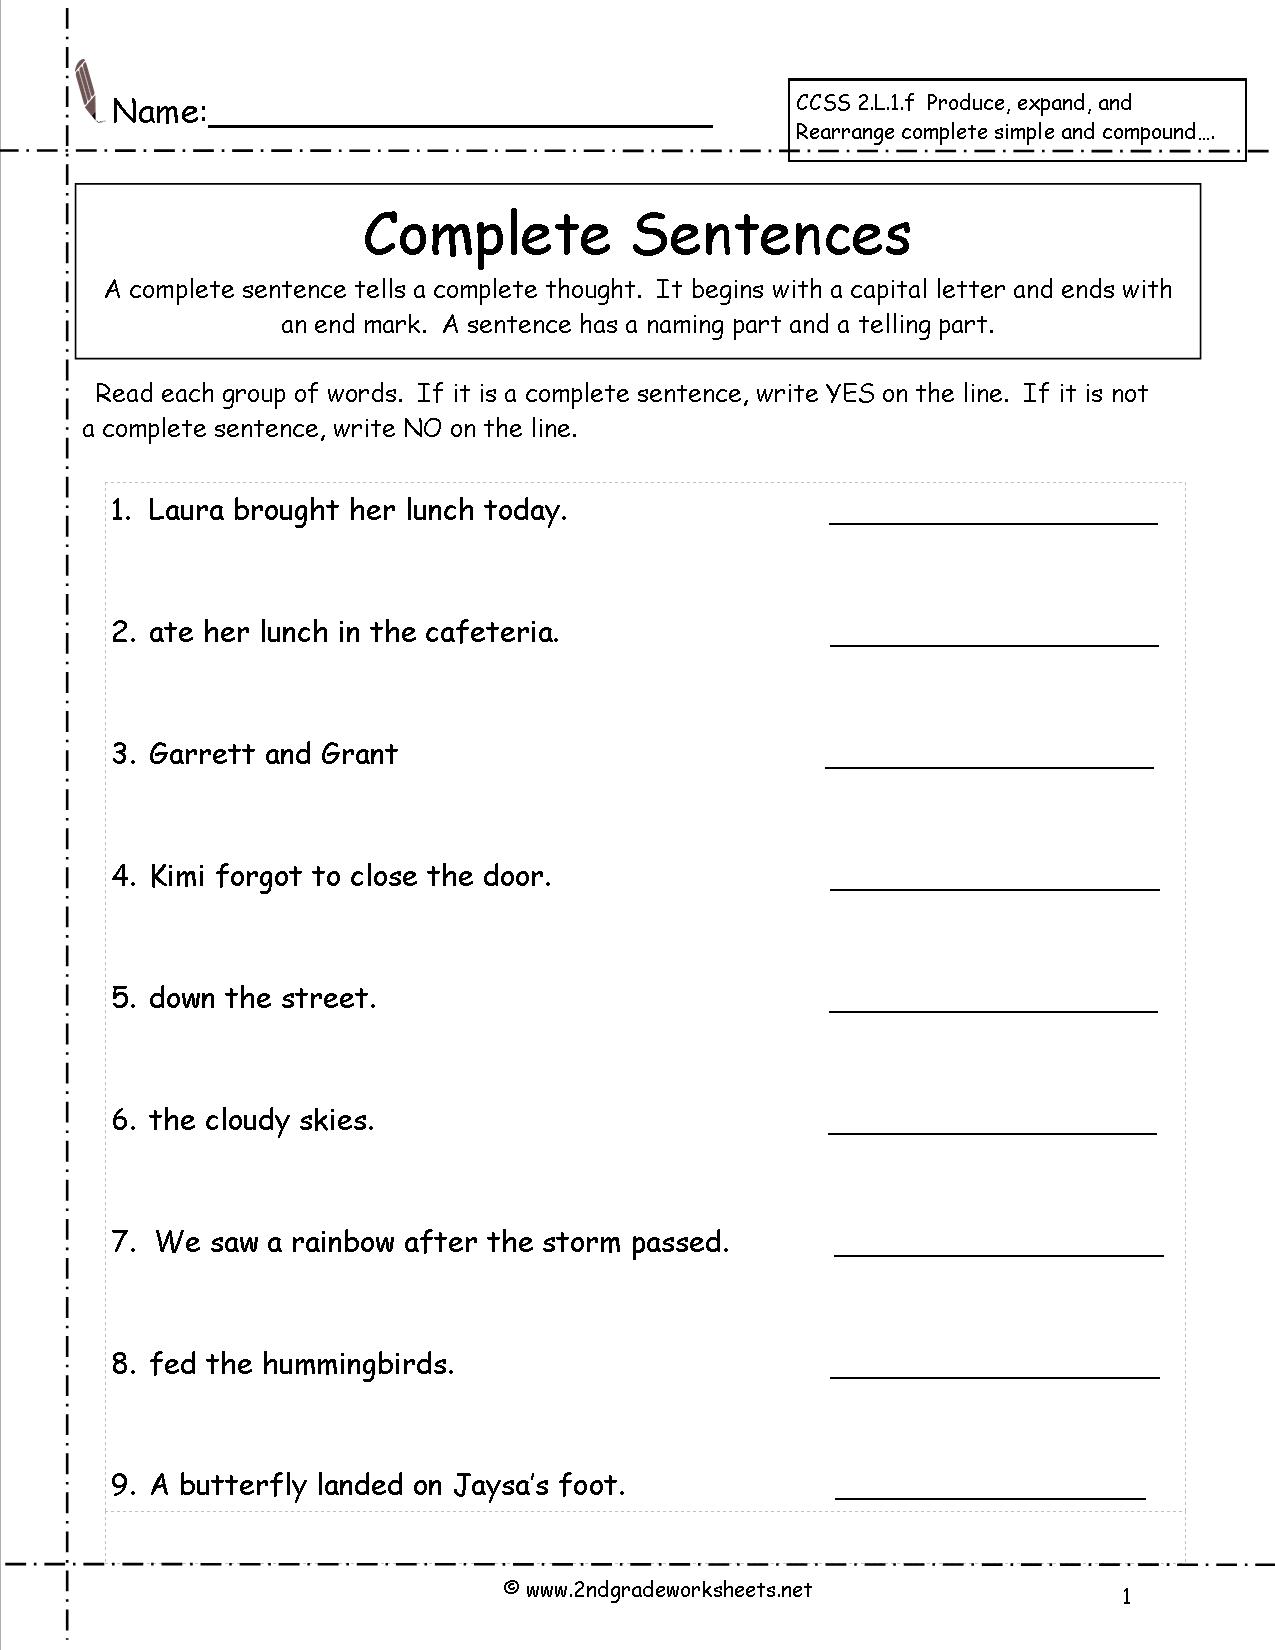 Compound Sentences Worksheets 2nd Grade Image